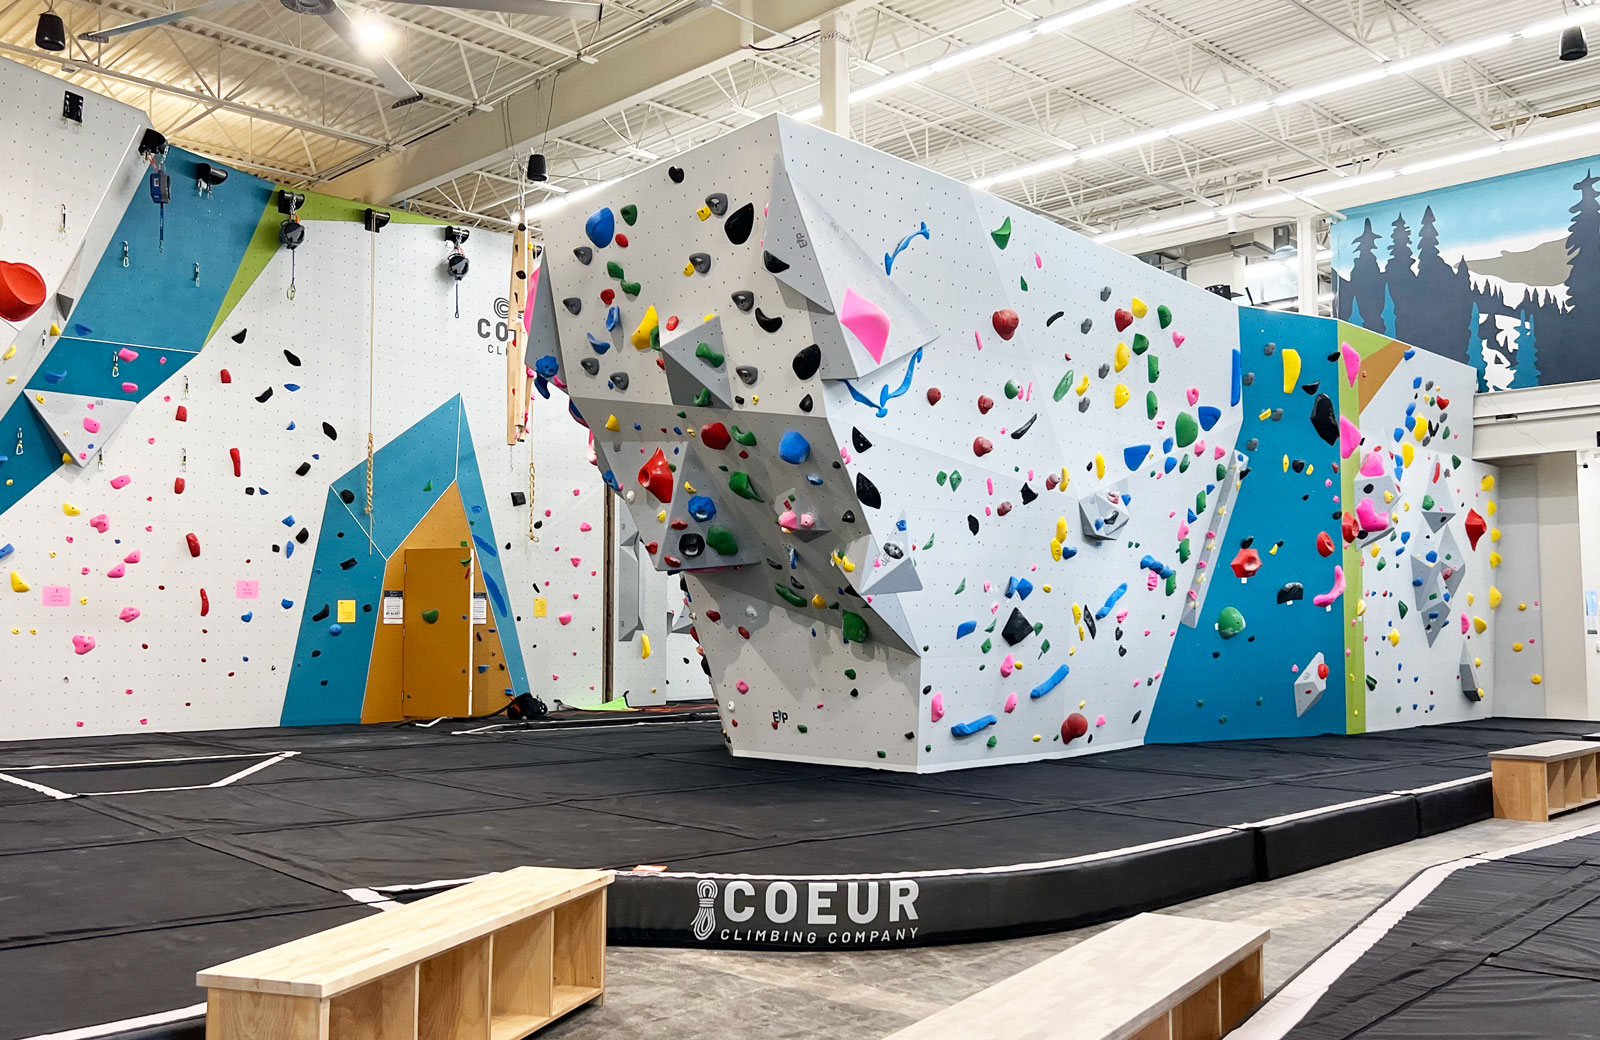 Coeur Teams — Coeur Climbing, Indoor Climbing Gym